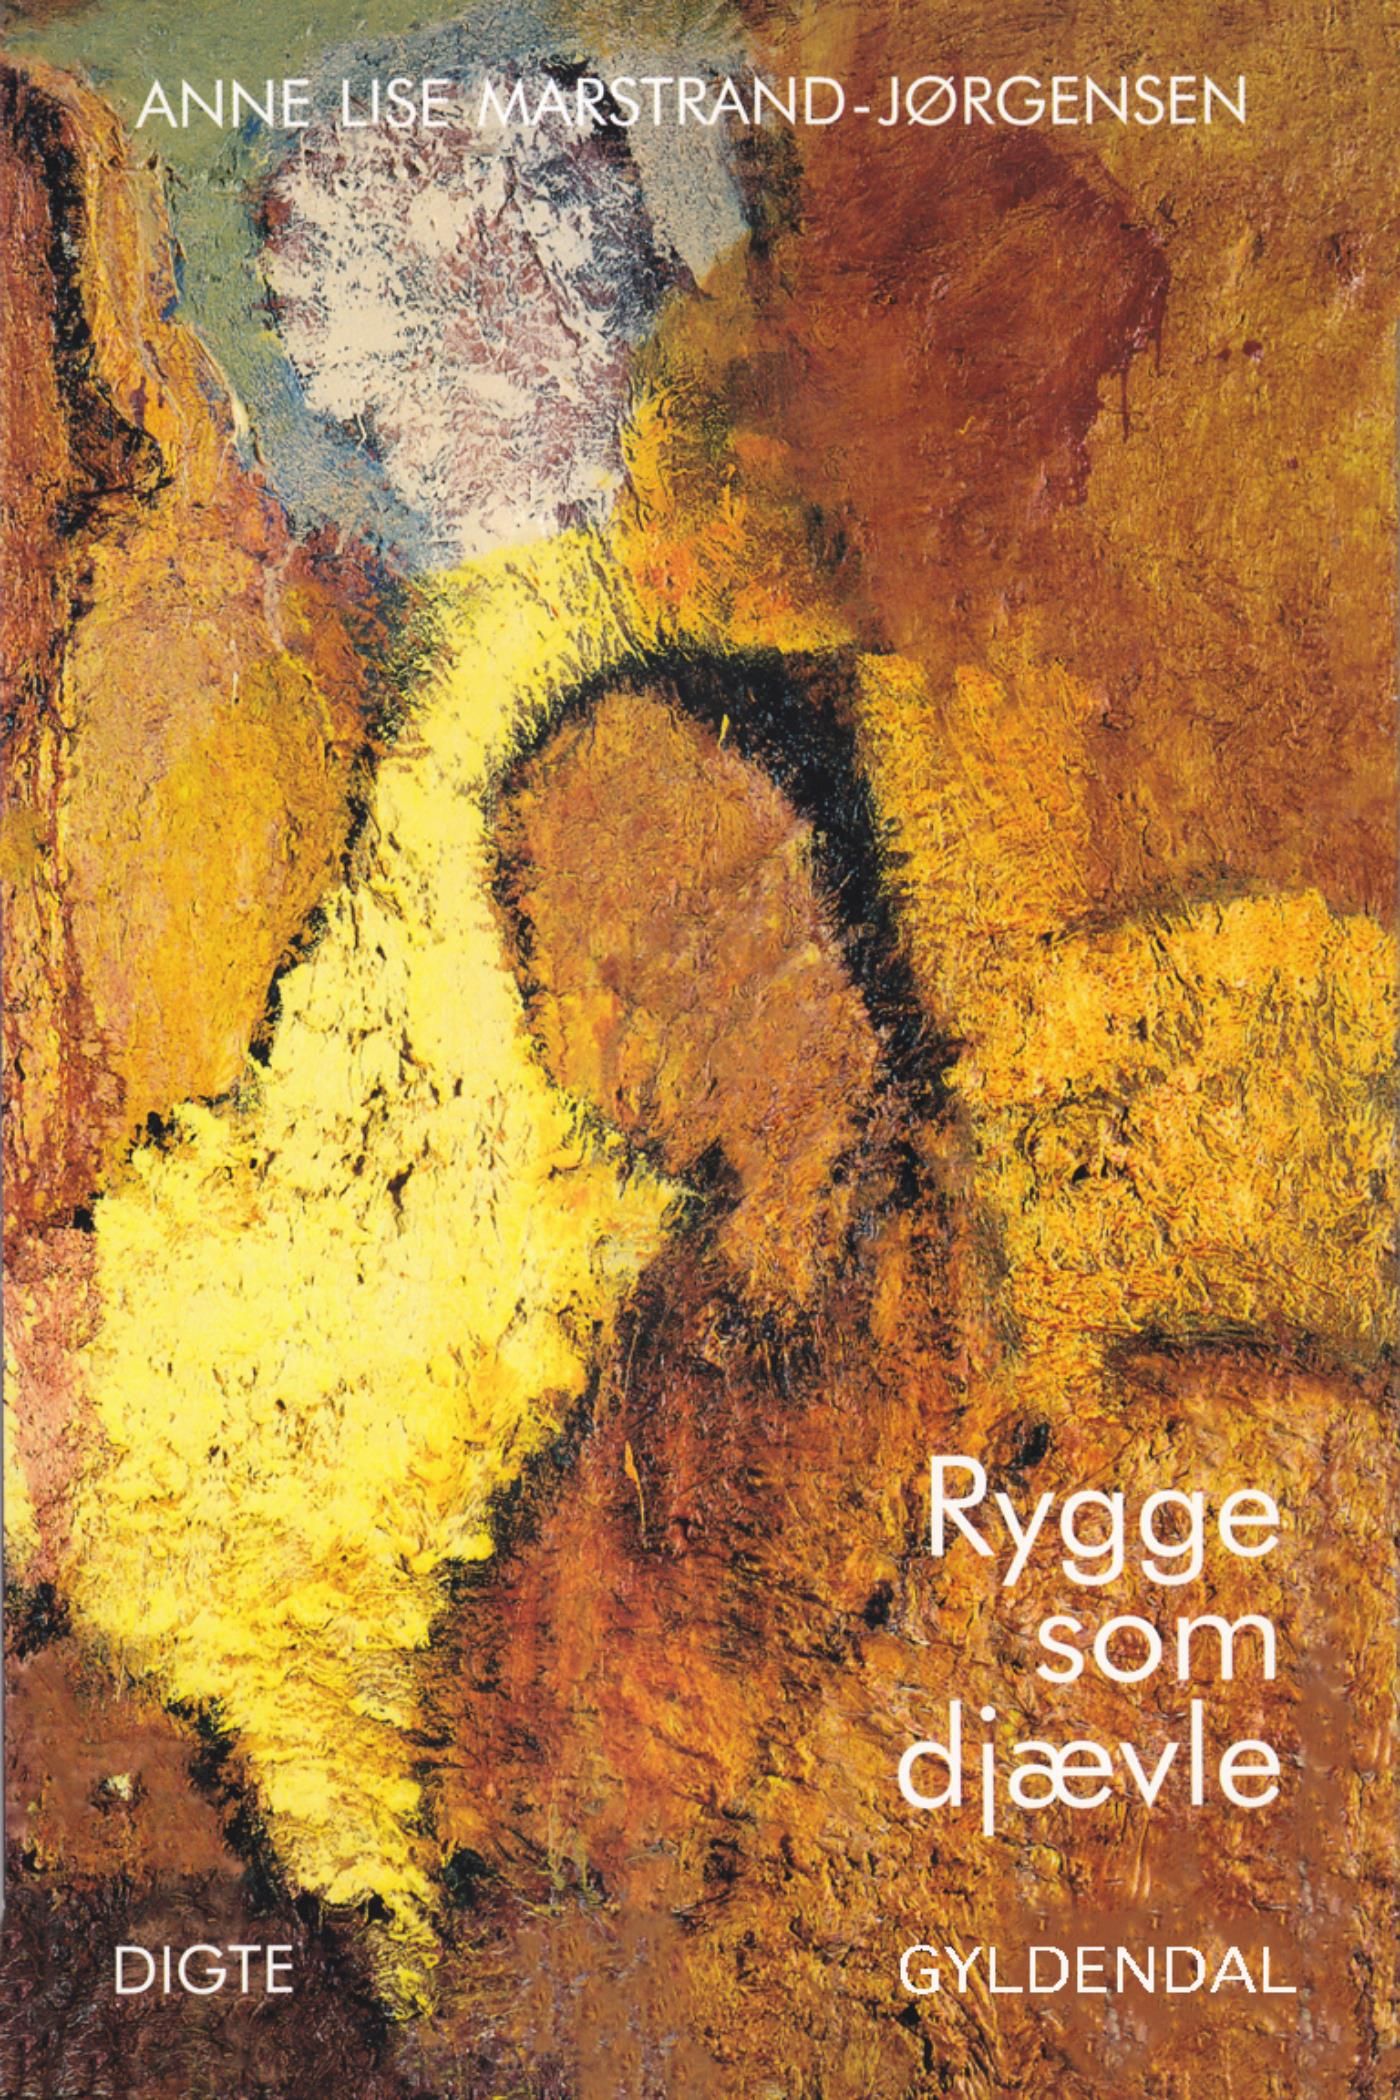 Rygge som djævle, e-bok av Anne Lise Marstrand-Jørgensen